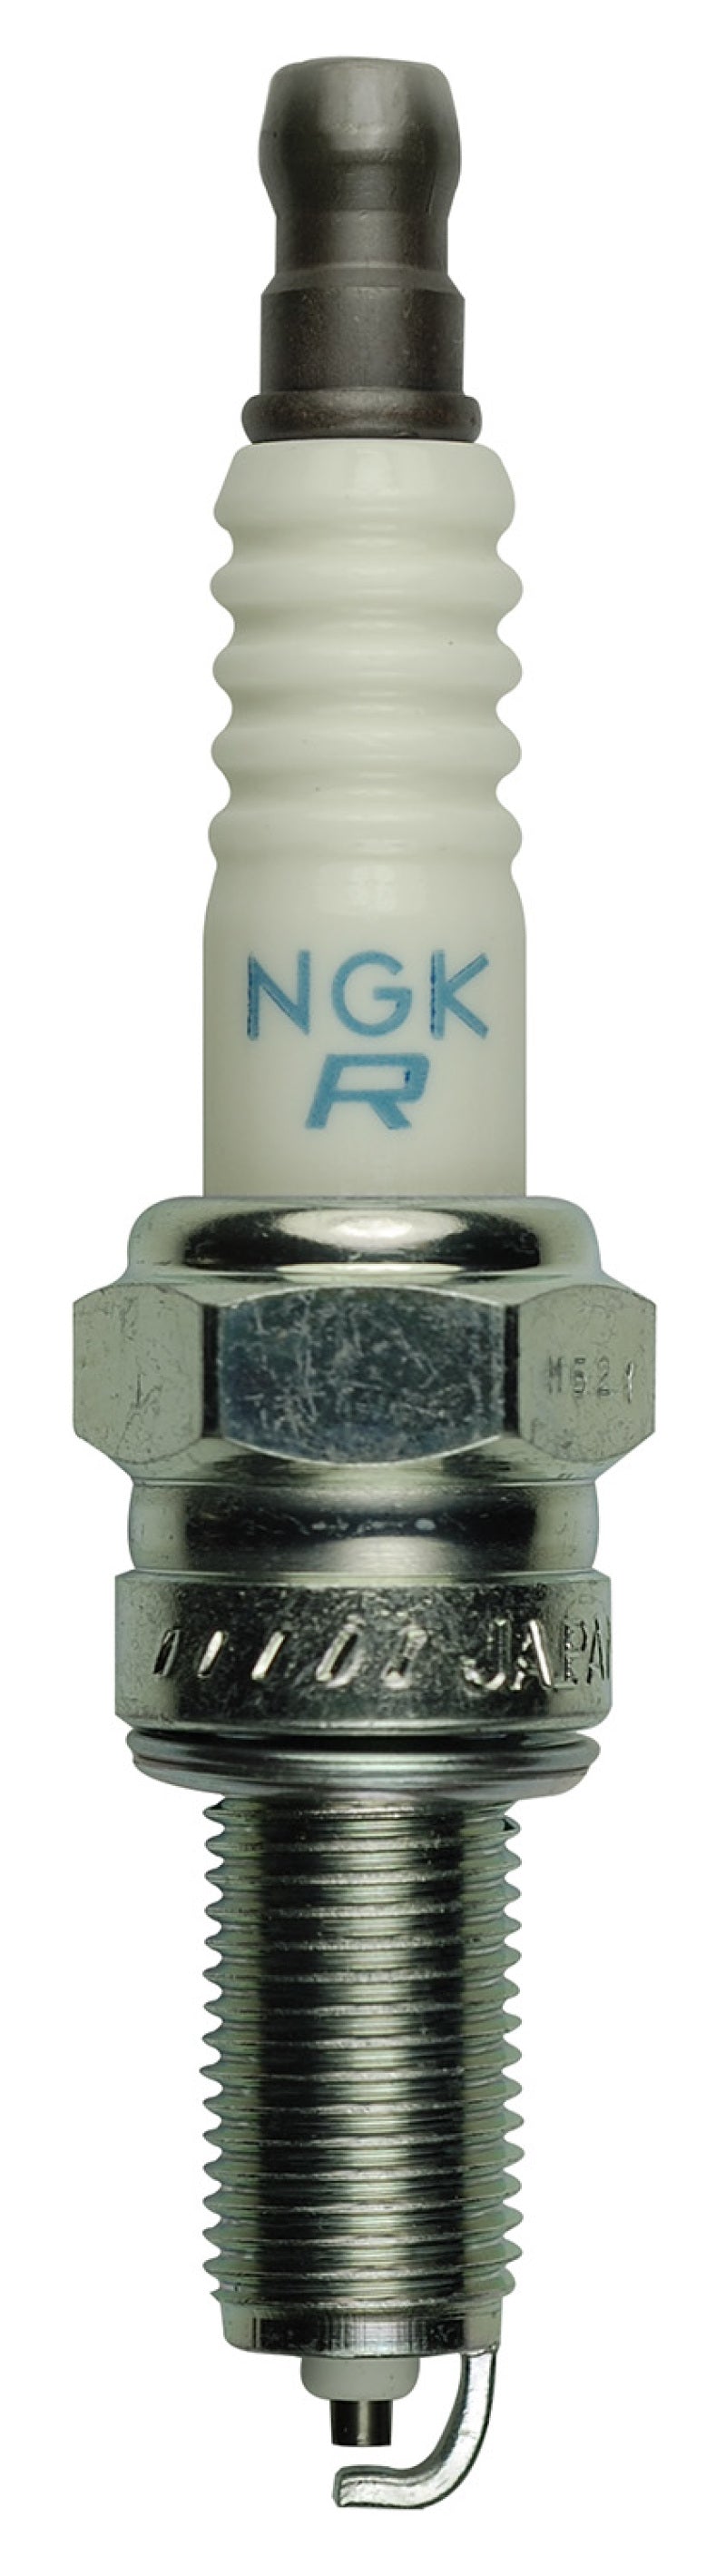 NGK Copper Core Spark Plug Box of 10 (MR7F)